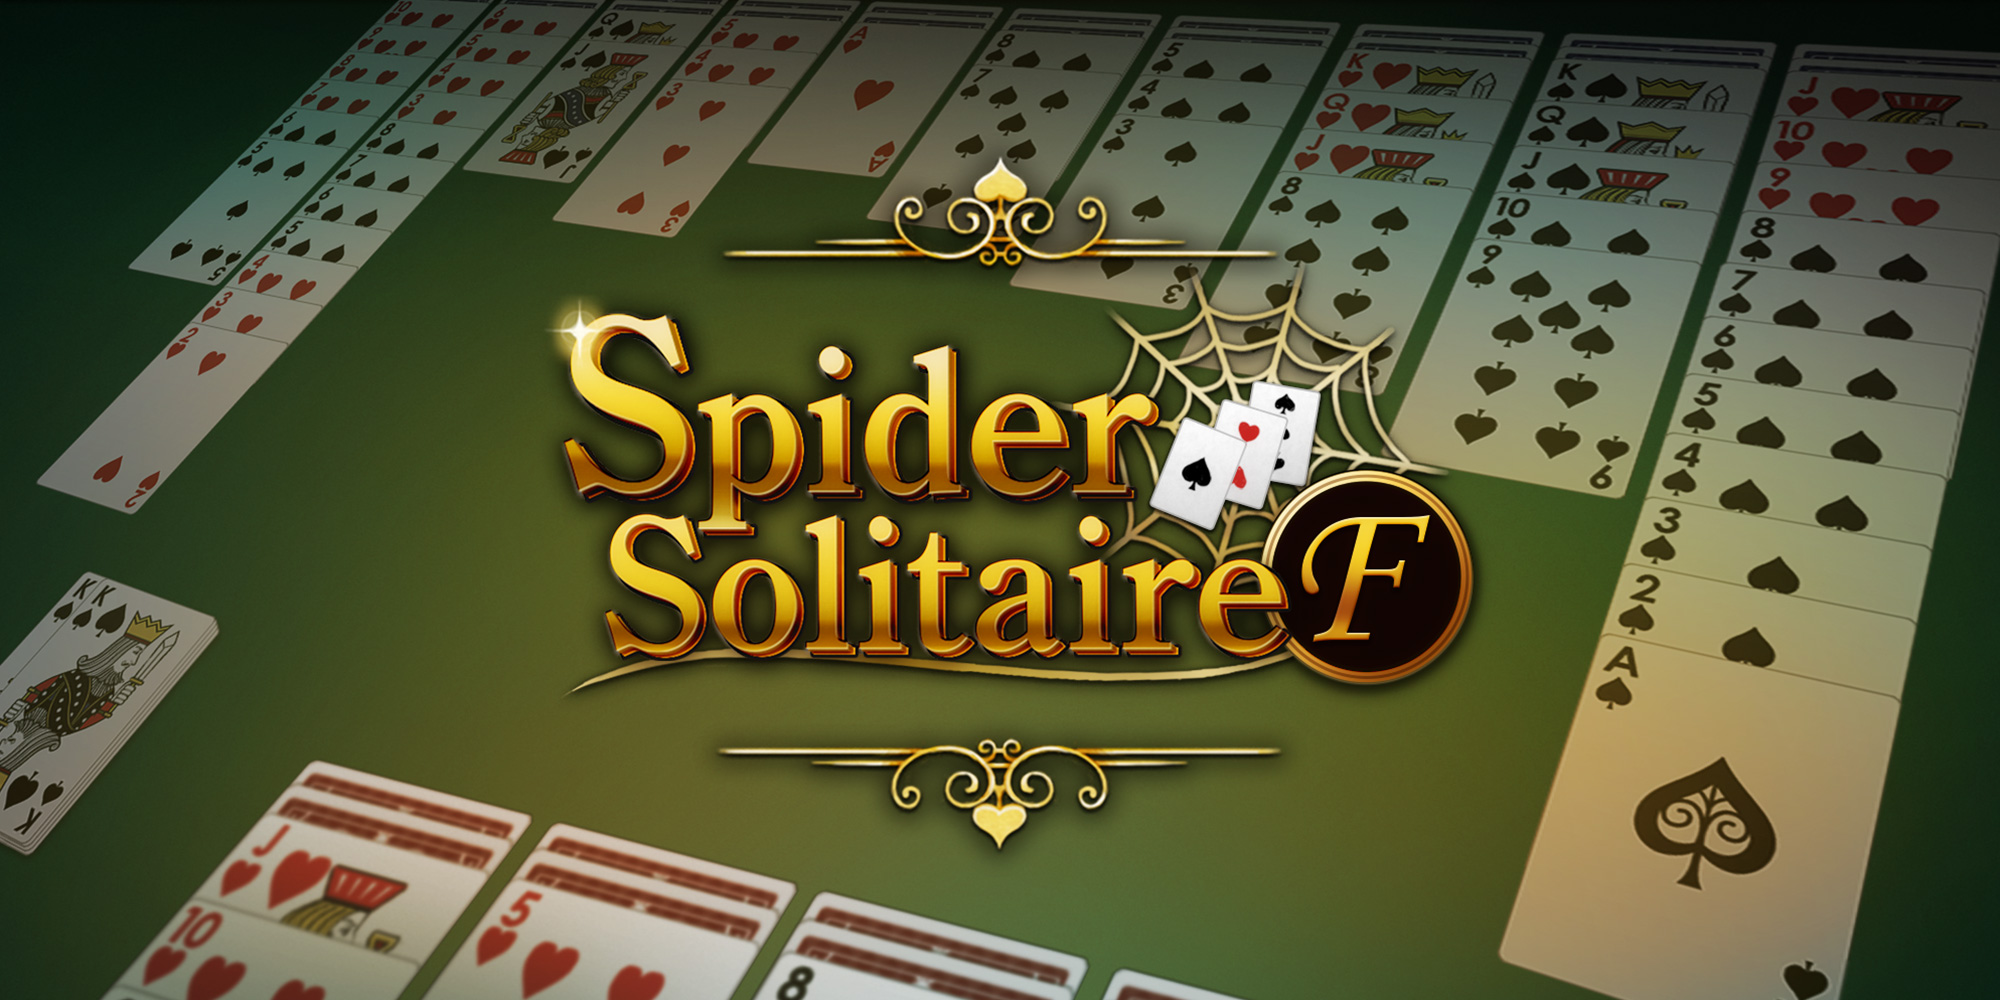 Spider Solitaire F, Aplicações de download da Nintendo Switch, Jogos